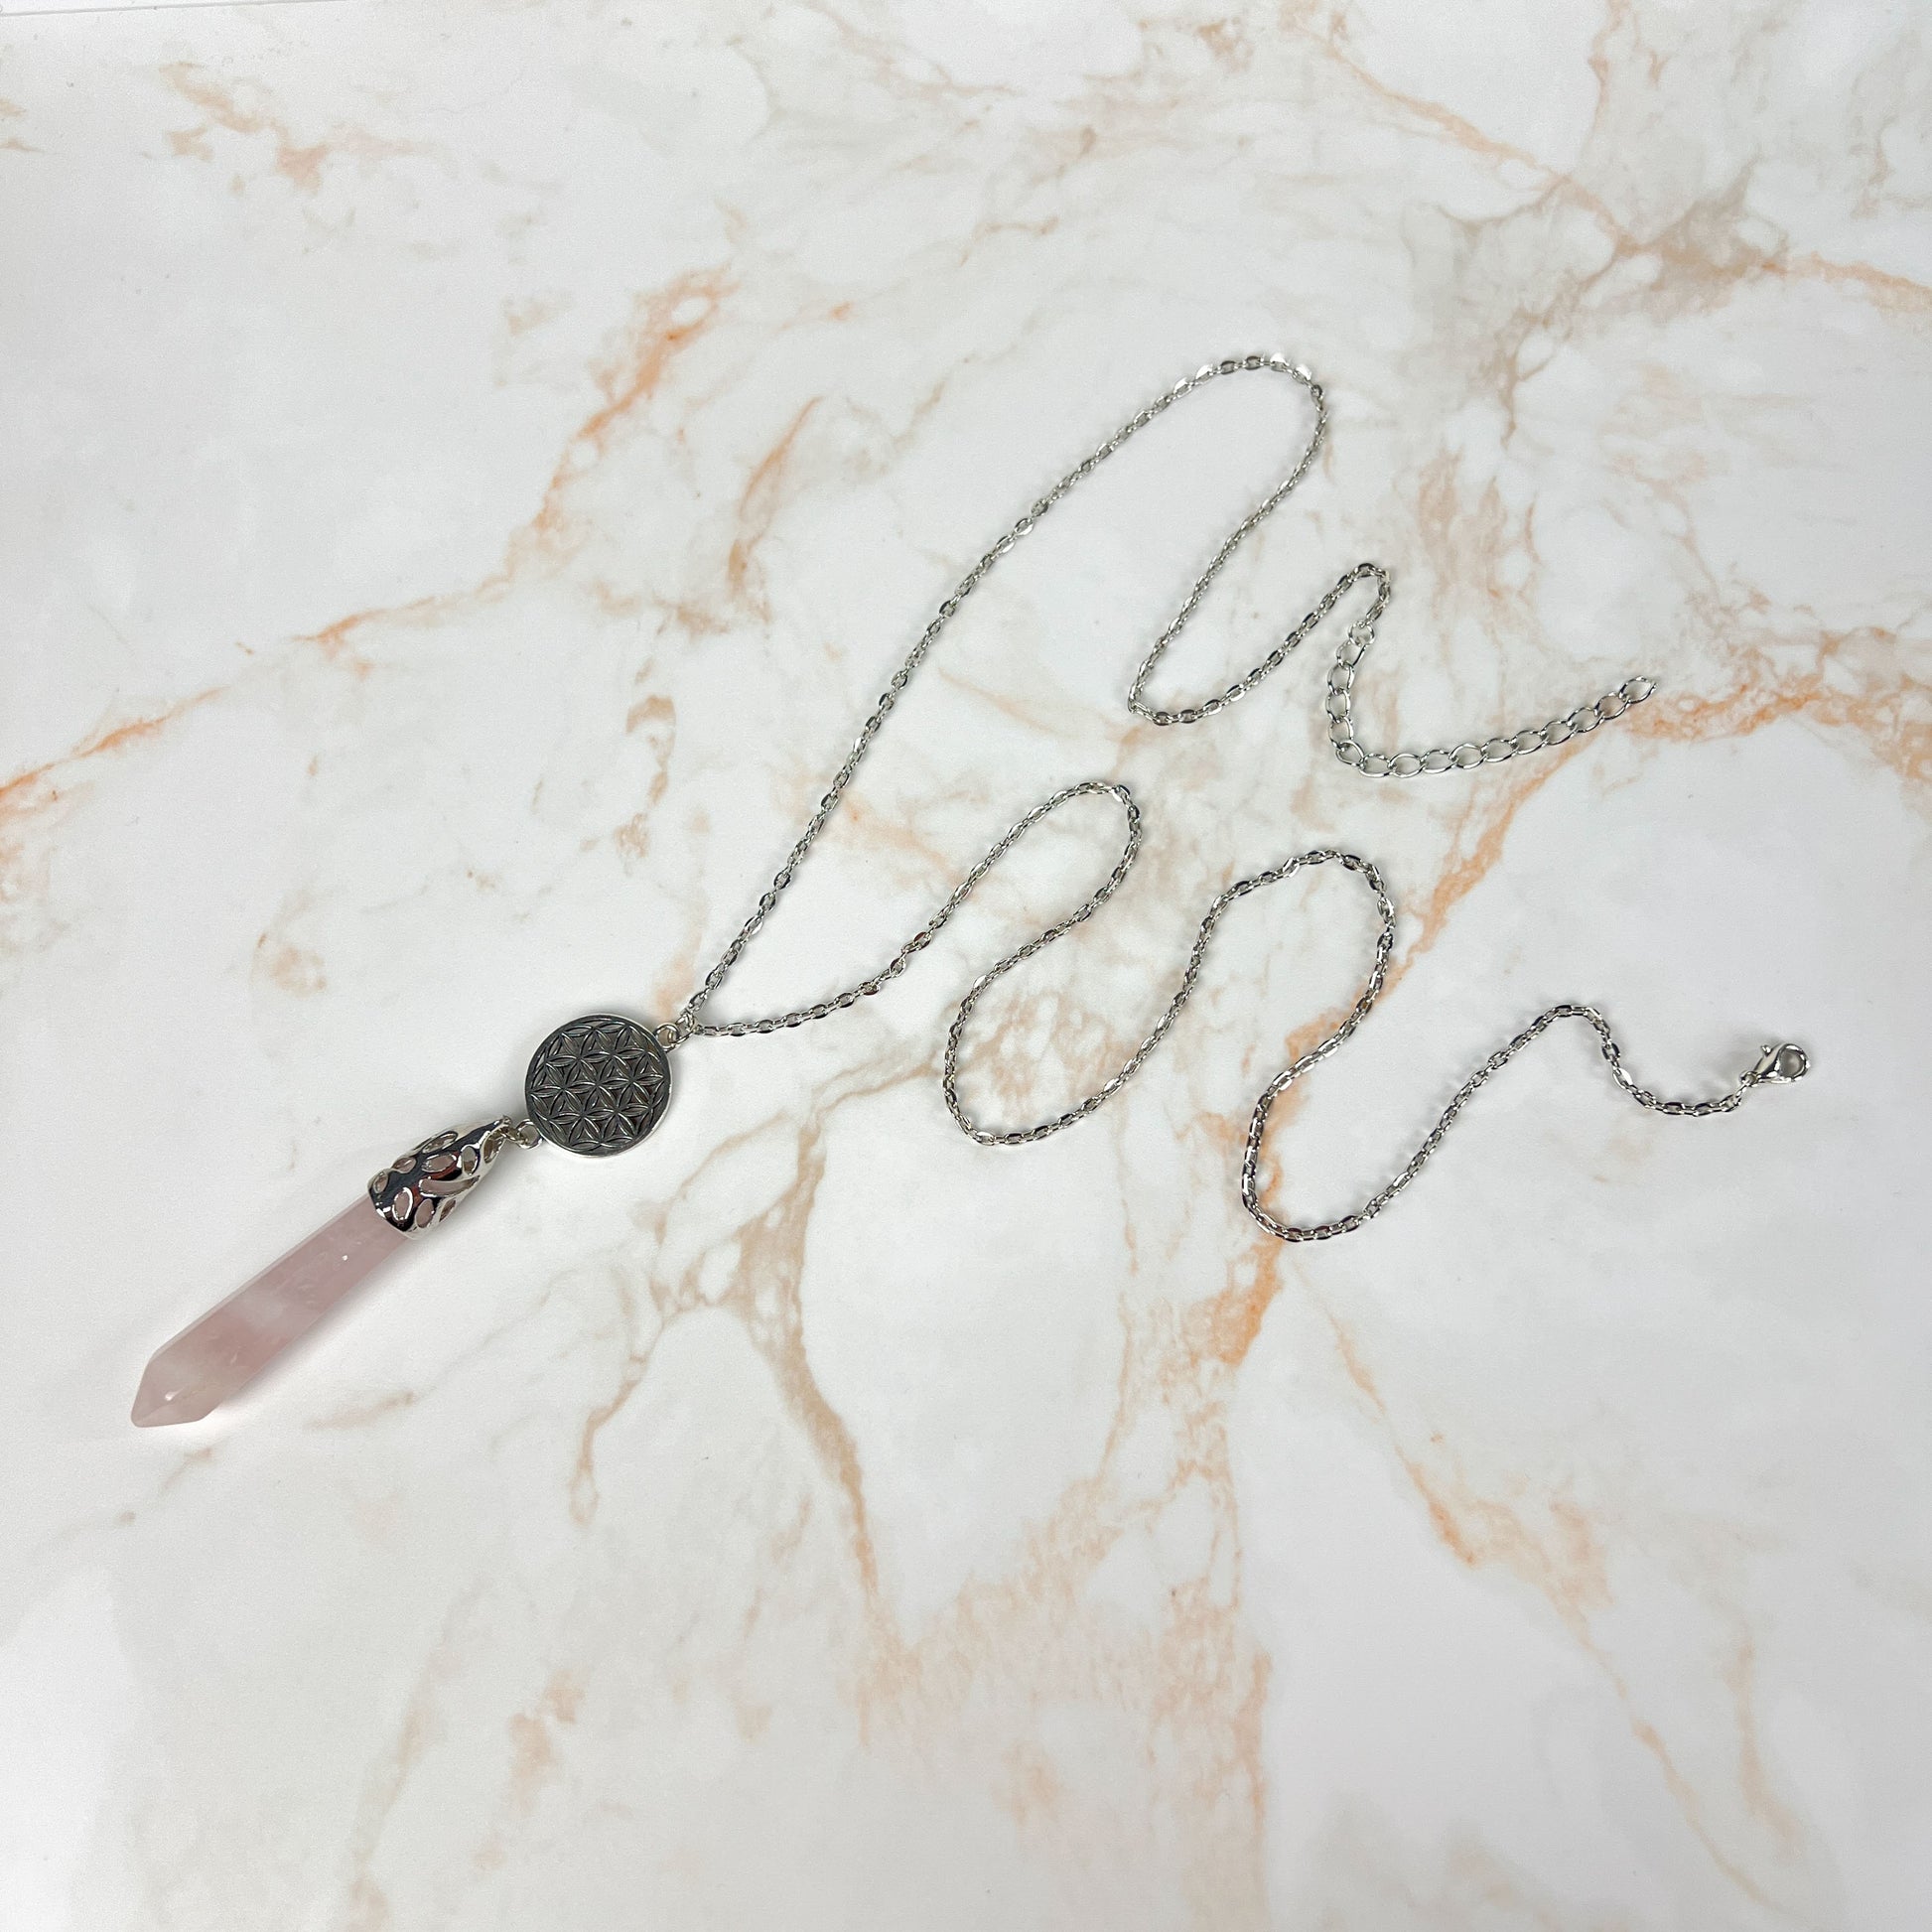 Rose quartz flower of life pendulum necklace Baguette Magick